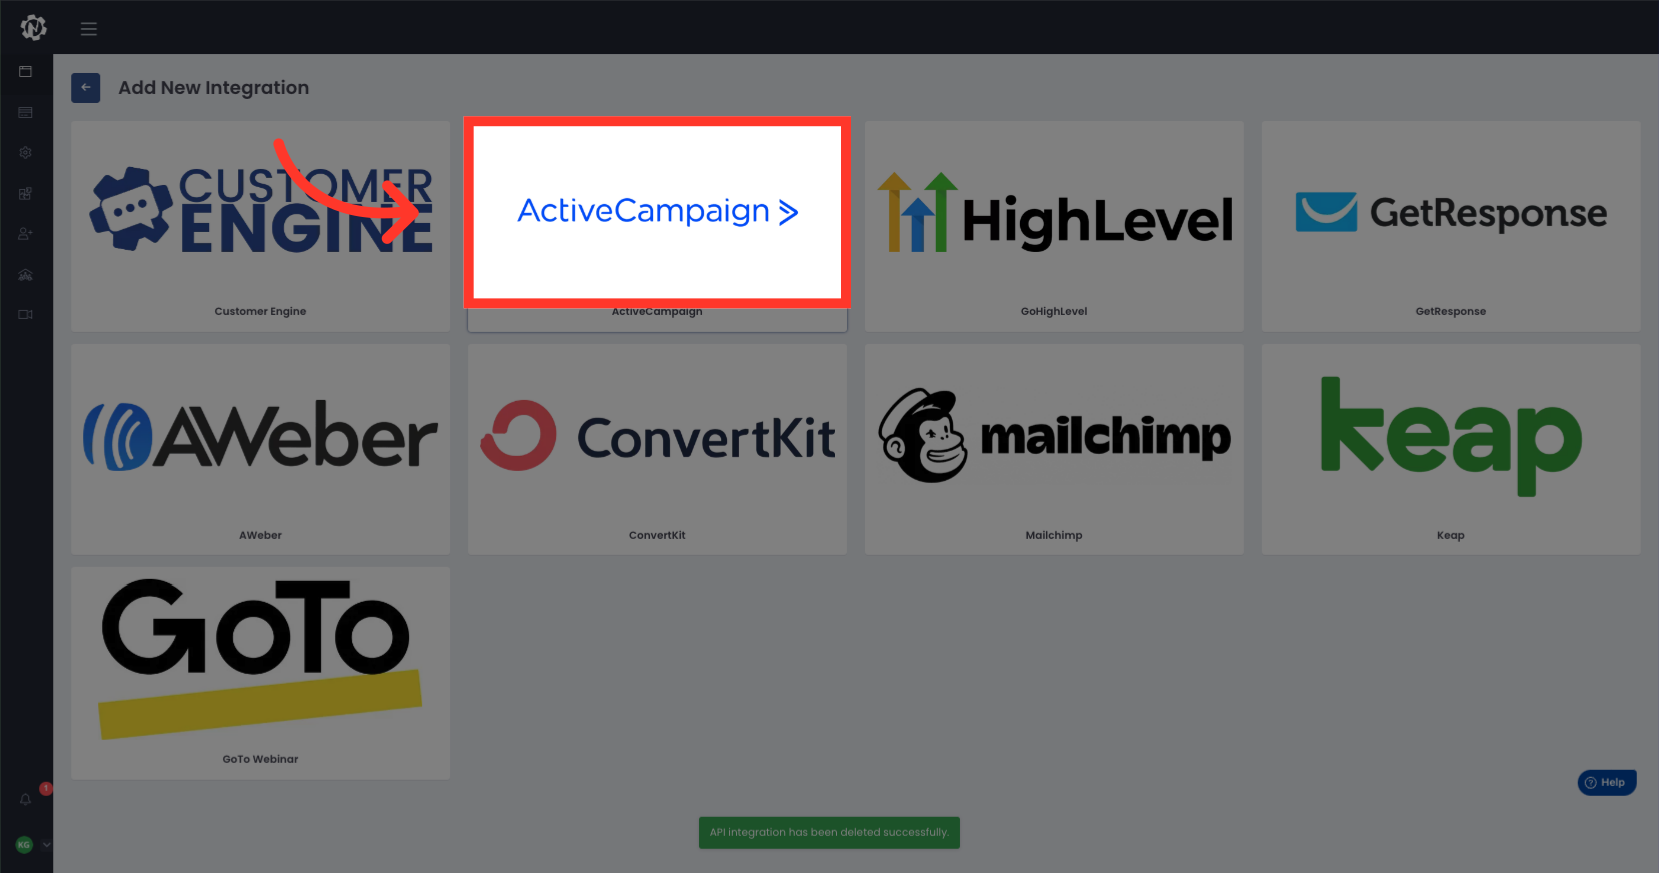 Click 'ActiveCampaign'